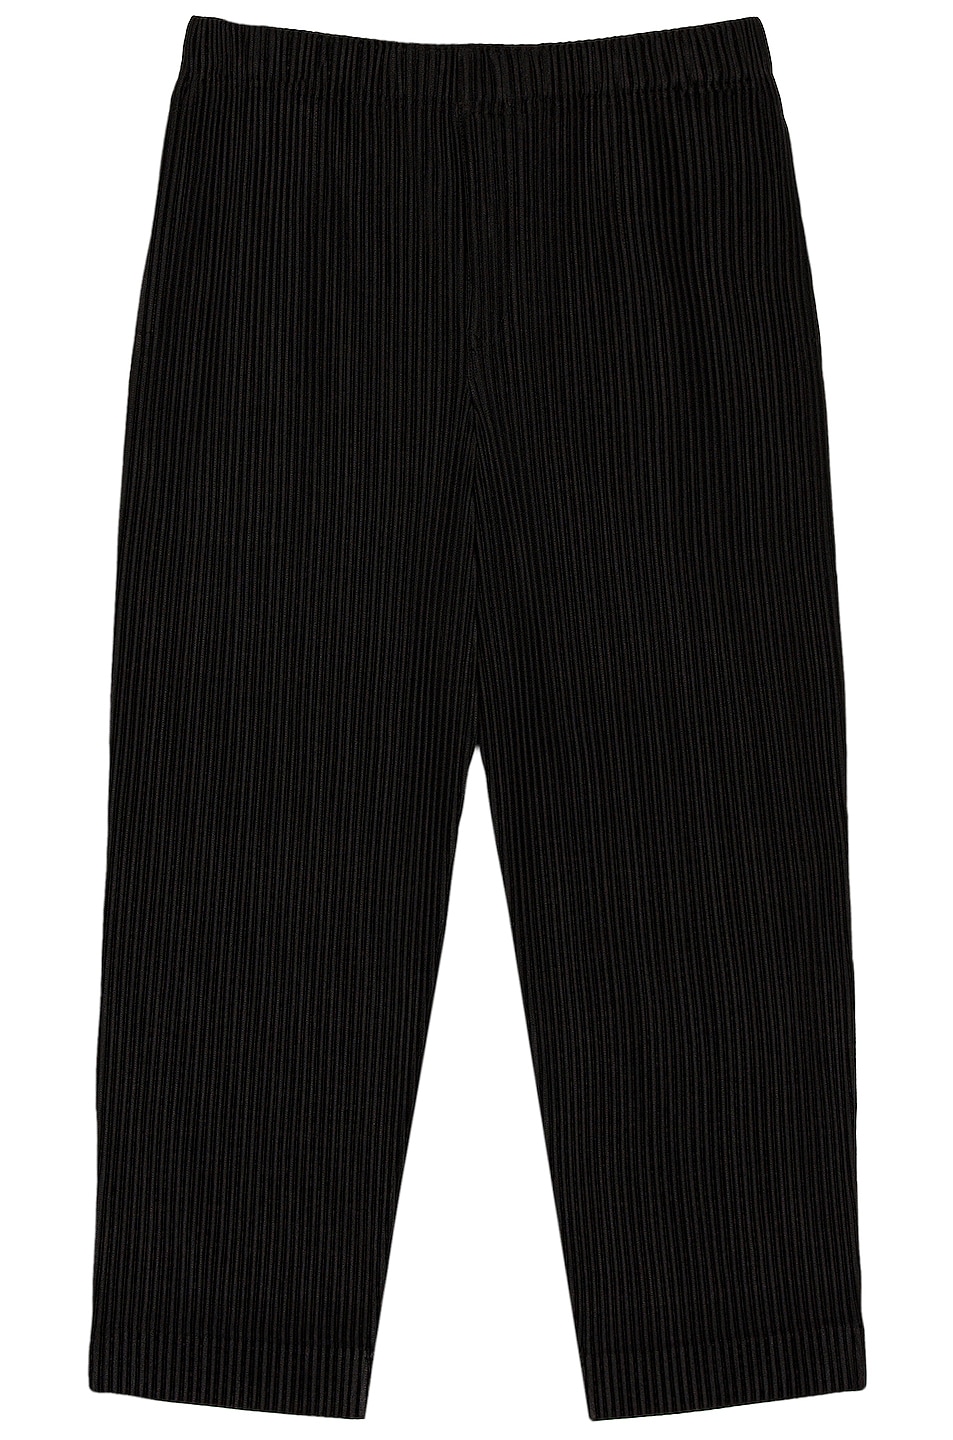 Image 1 of Homme Plisse Issey Miyake Pants in Black